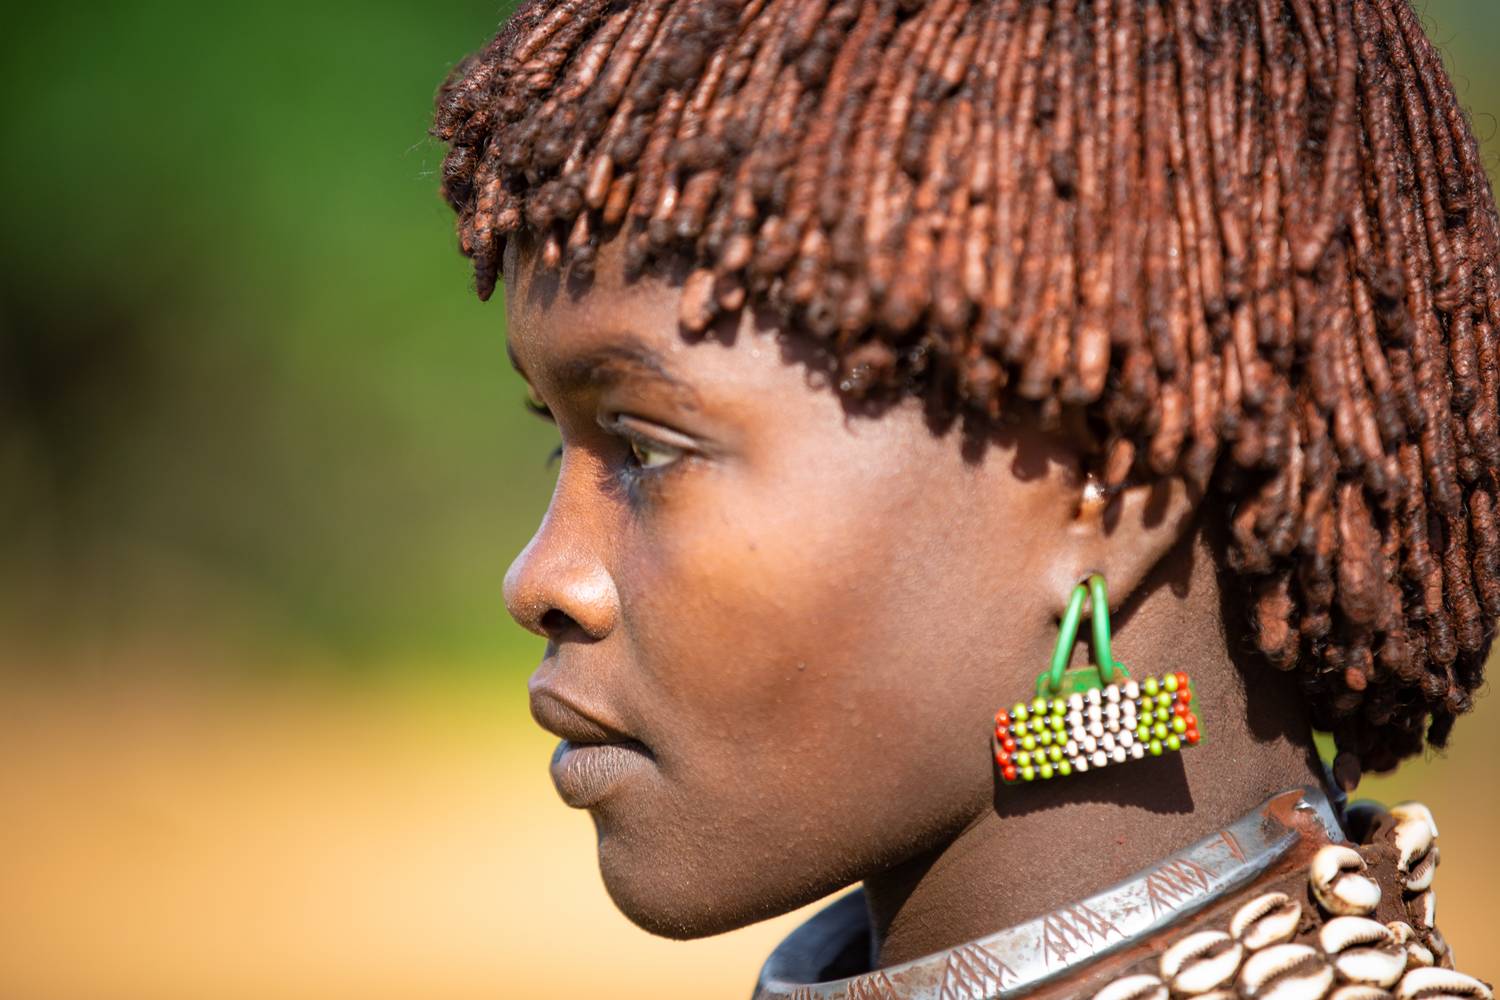 Portrait Äthiopien Afrika Omo Valley Hamer Stamm a Miro May